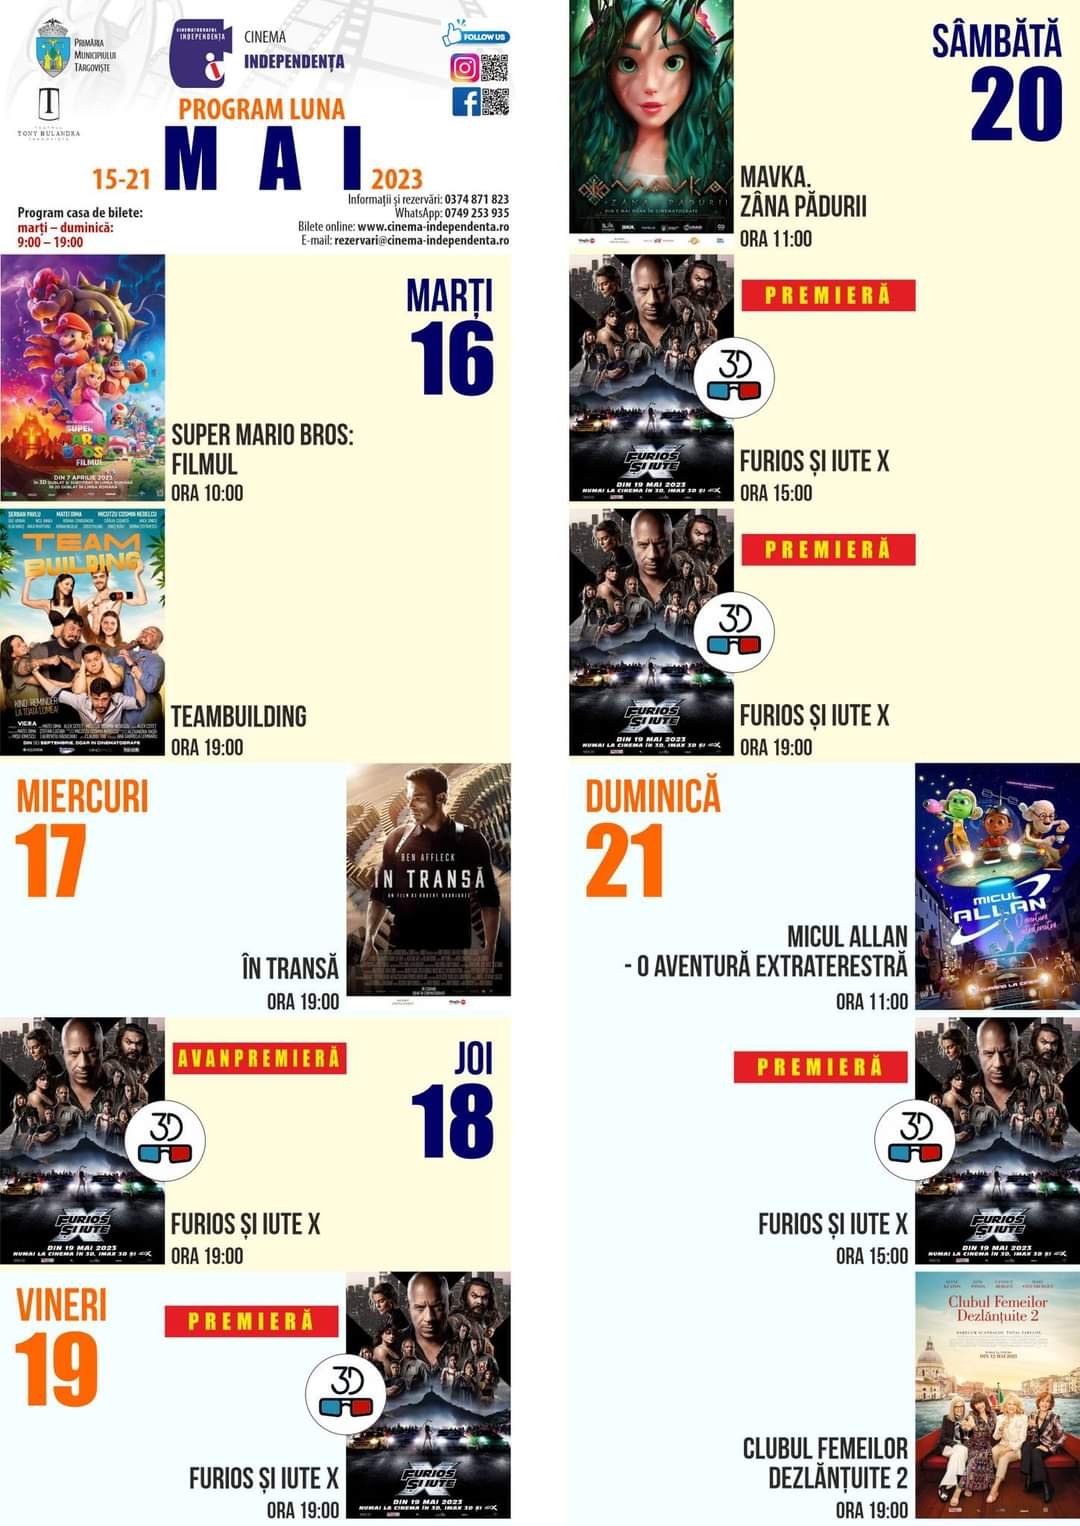 Oferta proiecțiilor de filme la Cinema Independența pentru  perioada 15-21 mai 2023 este variată.